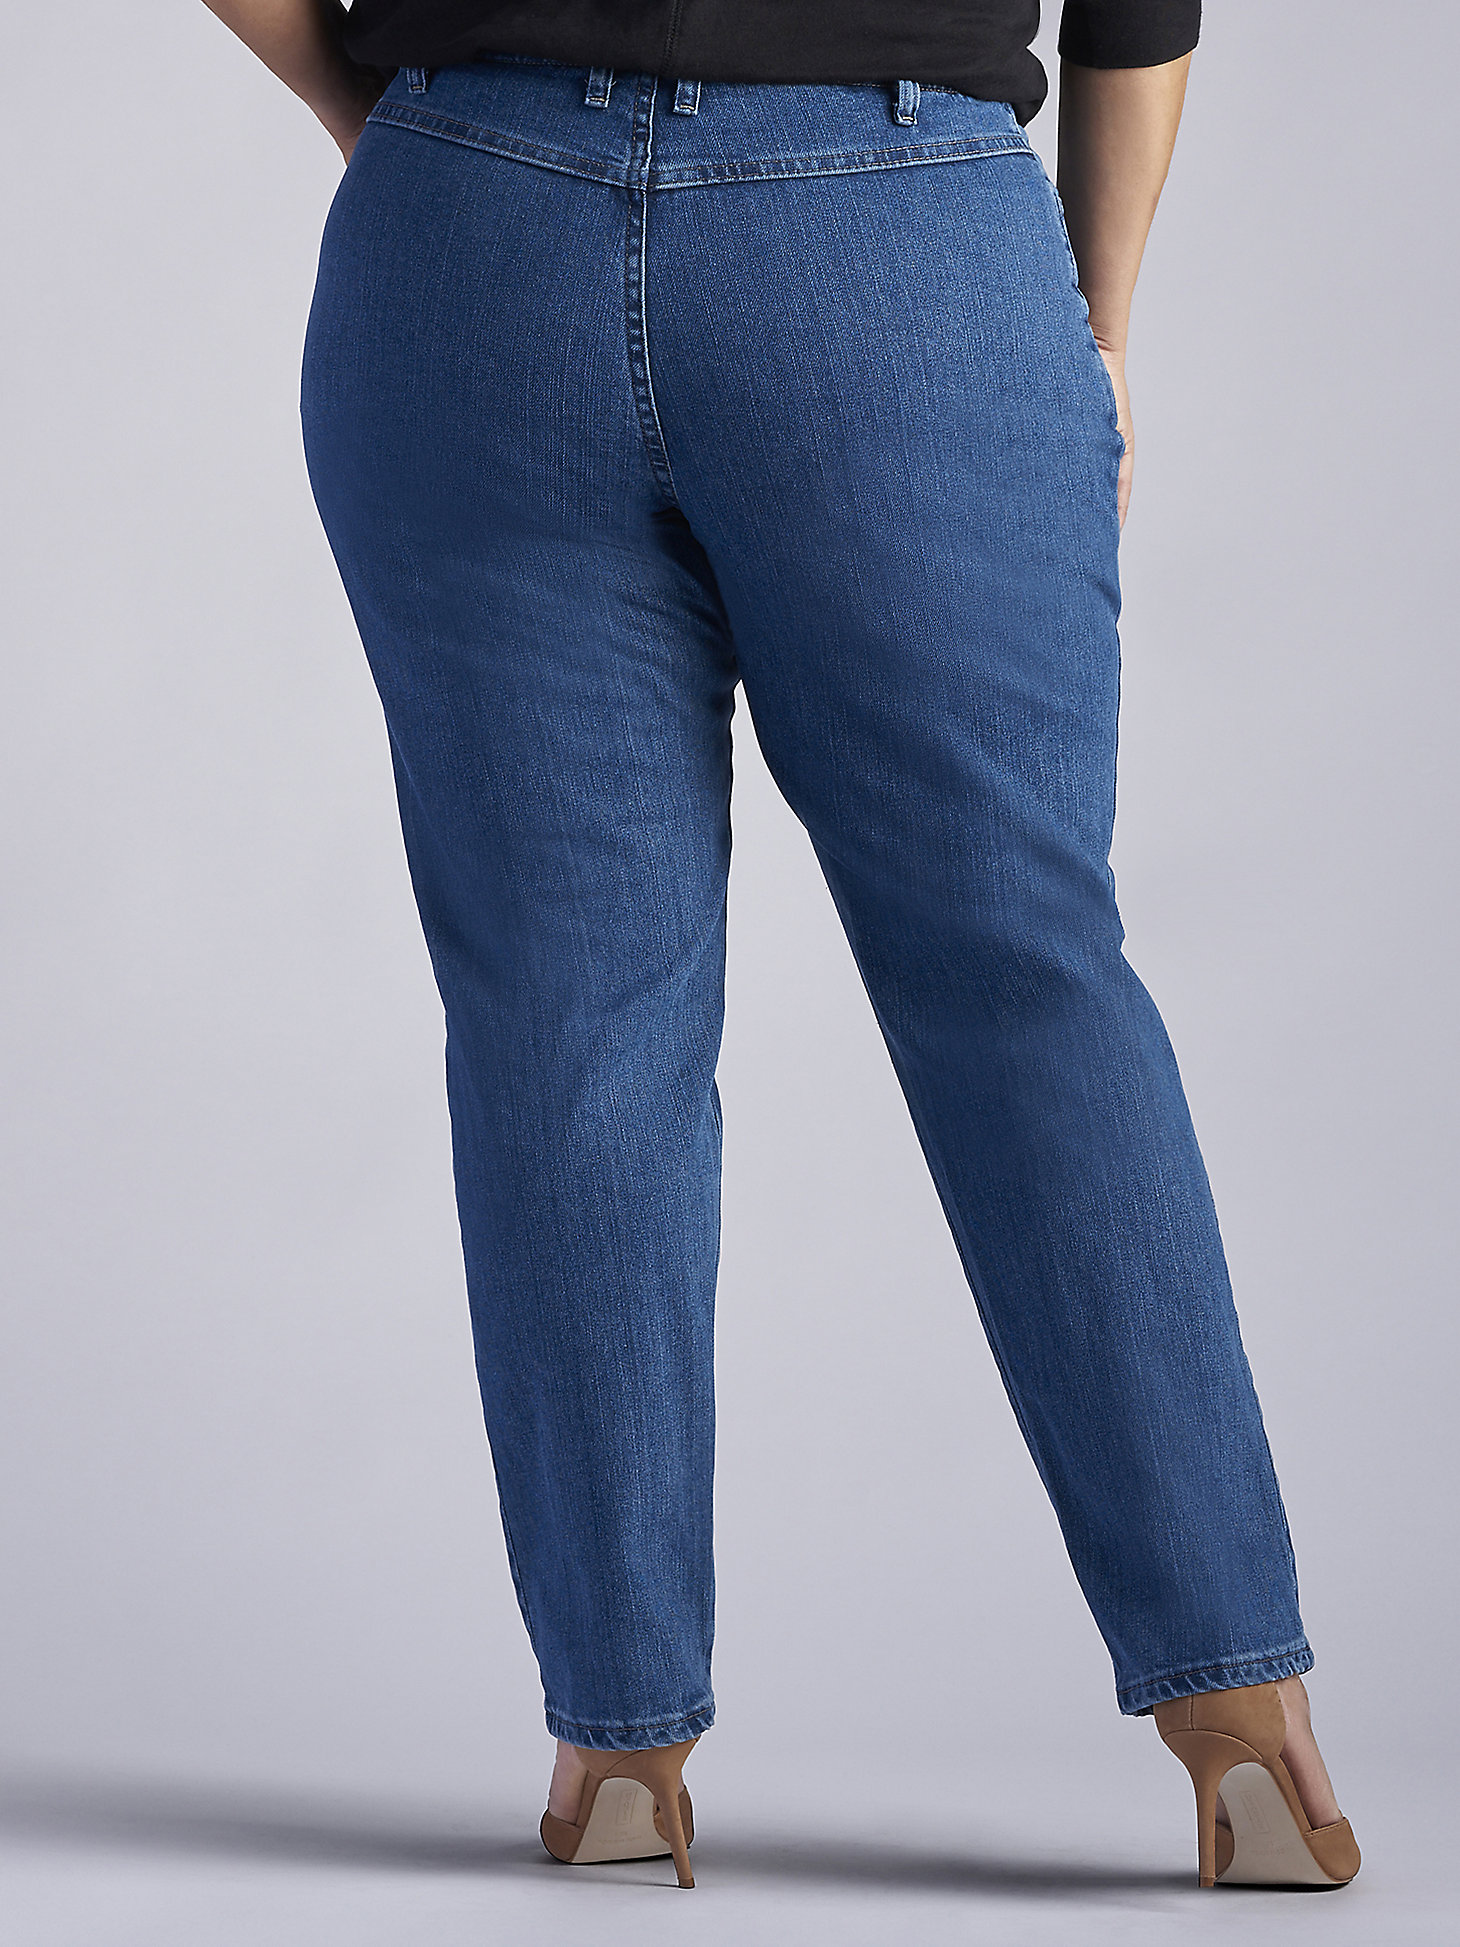 Women’s Side Elastic Jean (Plus) in Pepperstone alternative view 1